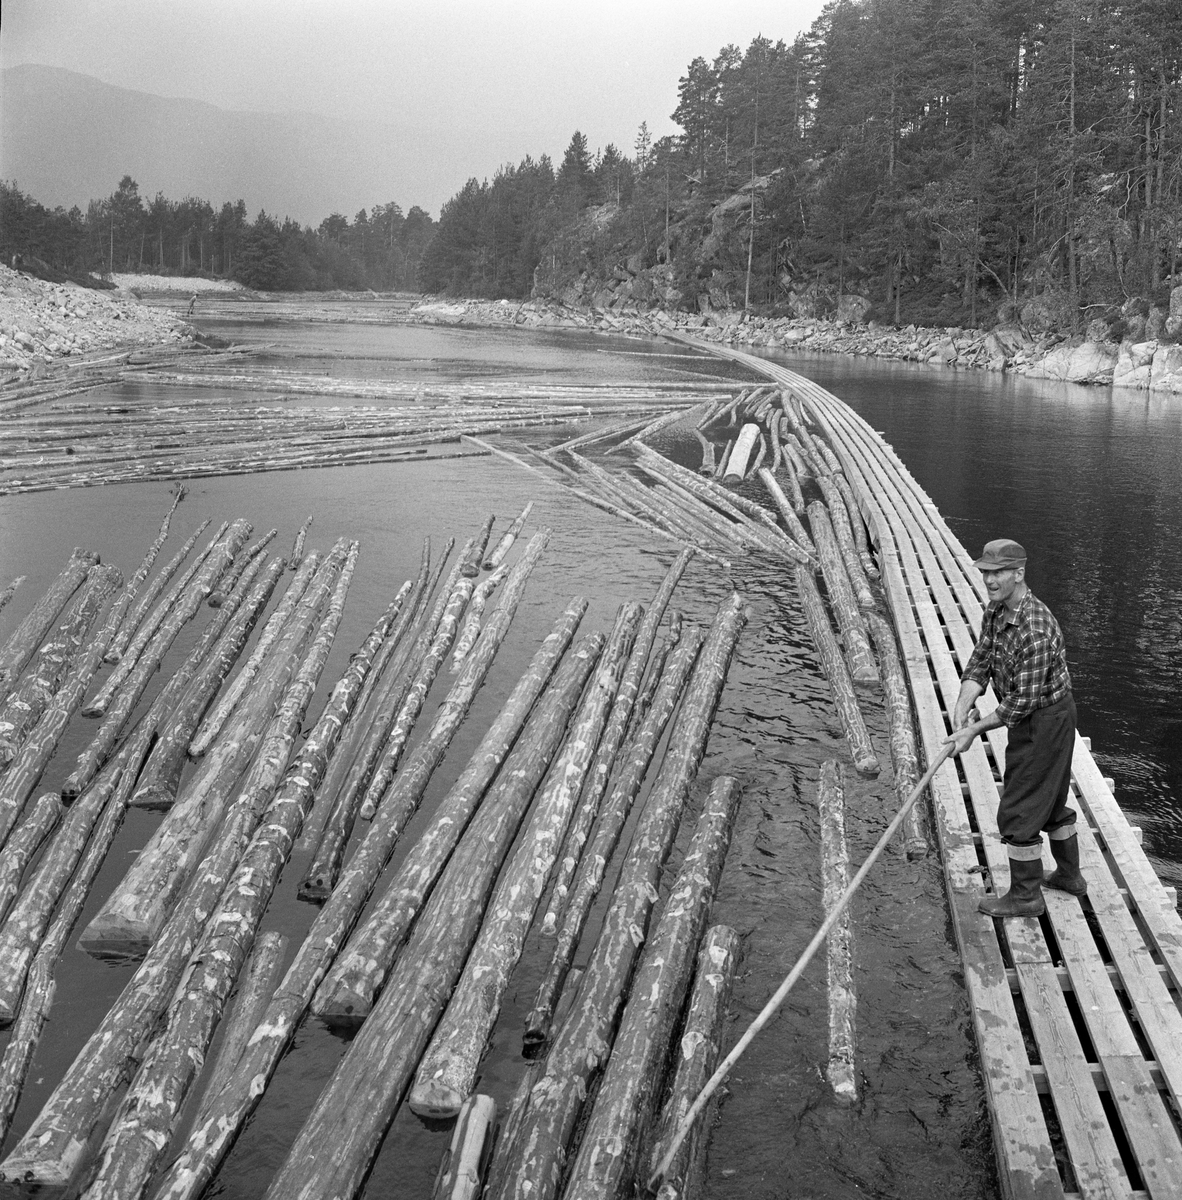 Ledelense og tømmer forbi nåldam. Fløter med hake. Nisserdammen i Arendalsvassdraget. Nisser dam ved utløpet av innsjøen Nisser i Telemark.